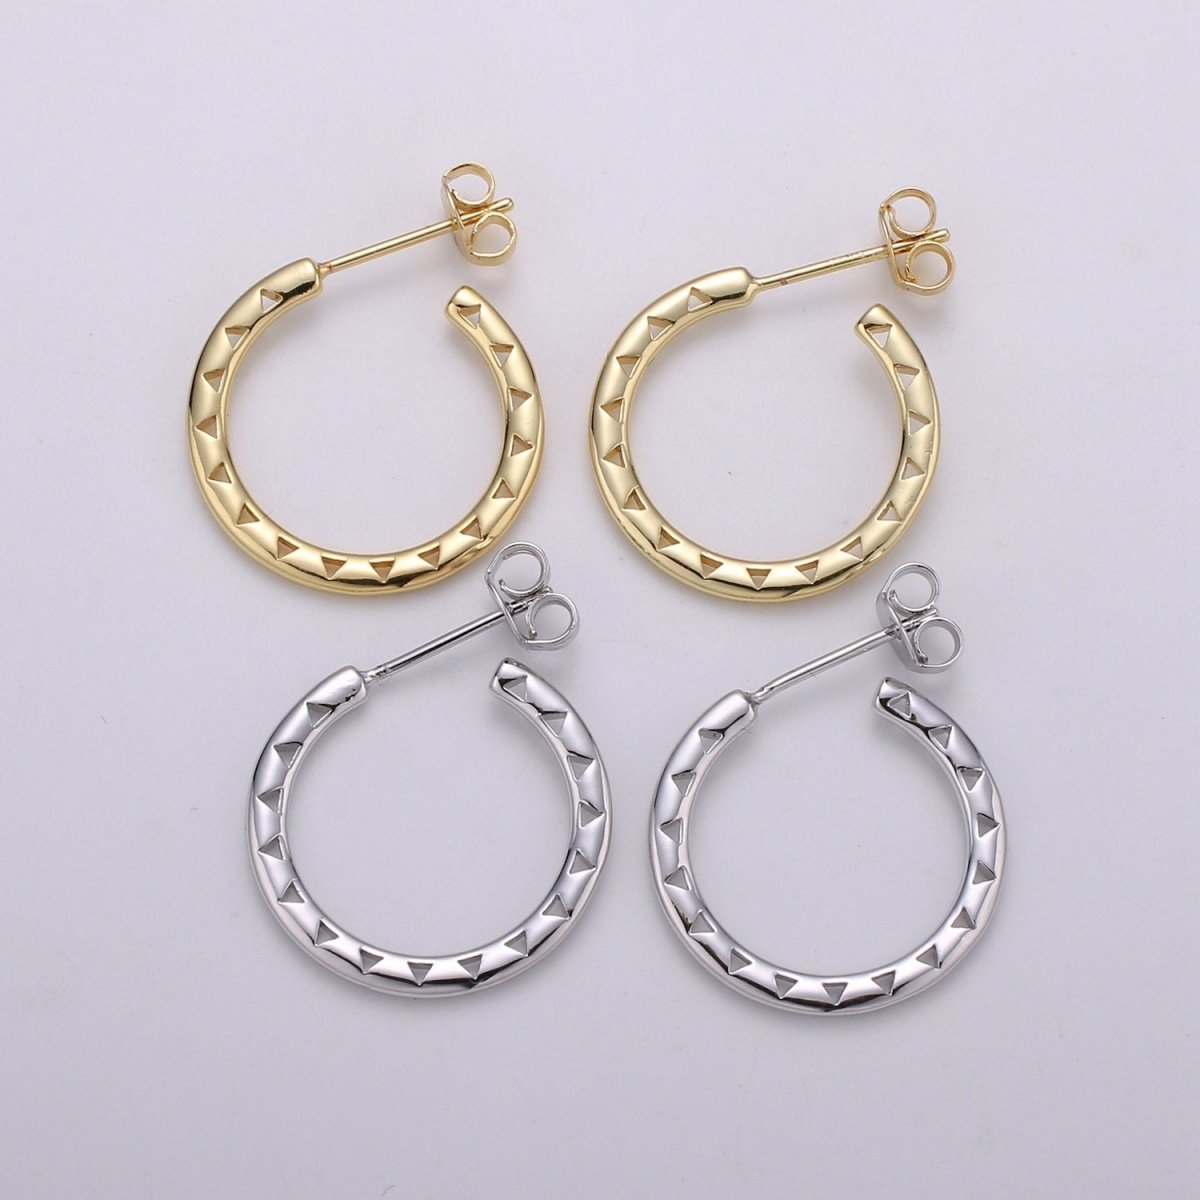 20mm Gold Hoop Earrings, Gold Vermeil Hoop Earrings, Statement Hoops, Tube Hoop Earrings, Large Hoop Earrings, Small Hoop Earrings for Gift Q-326 Q-327 - DLUXCA